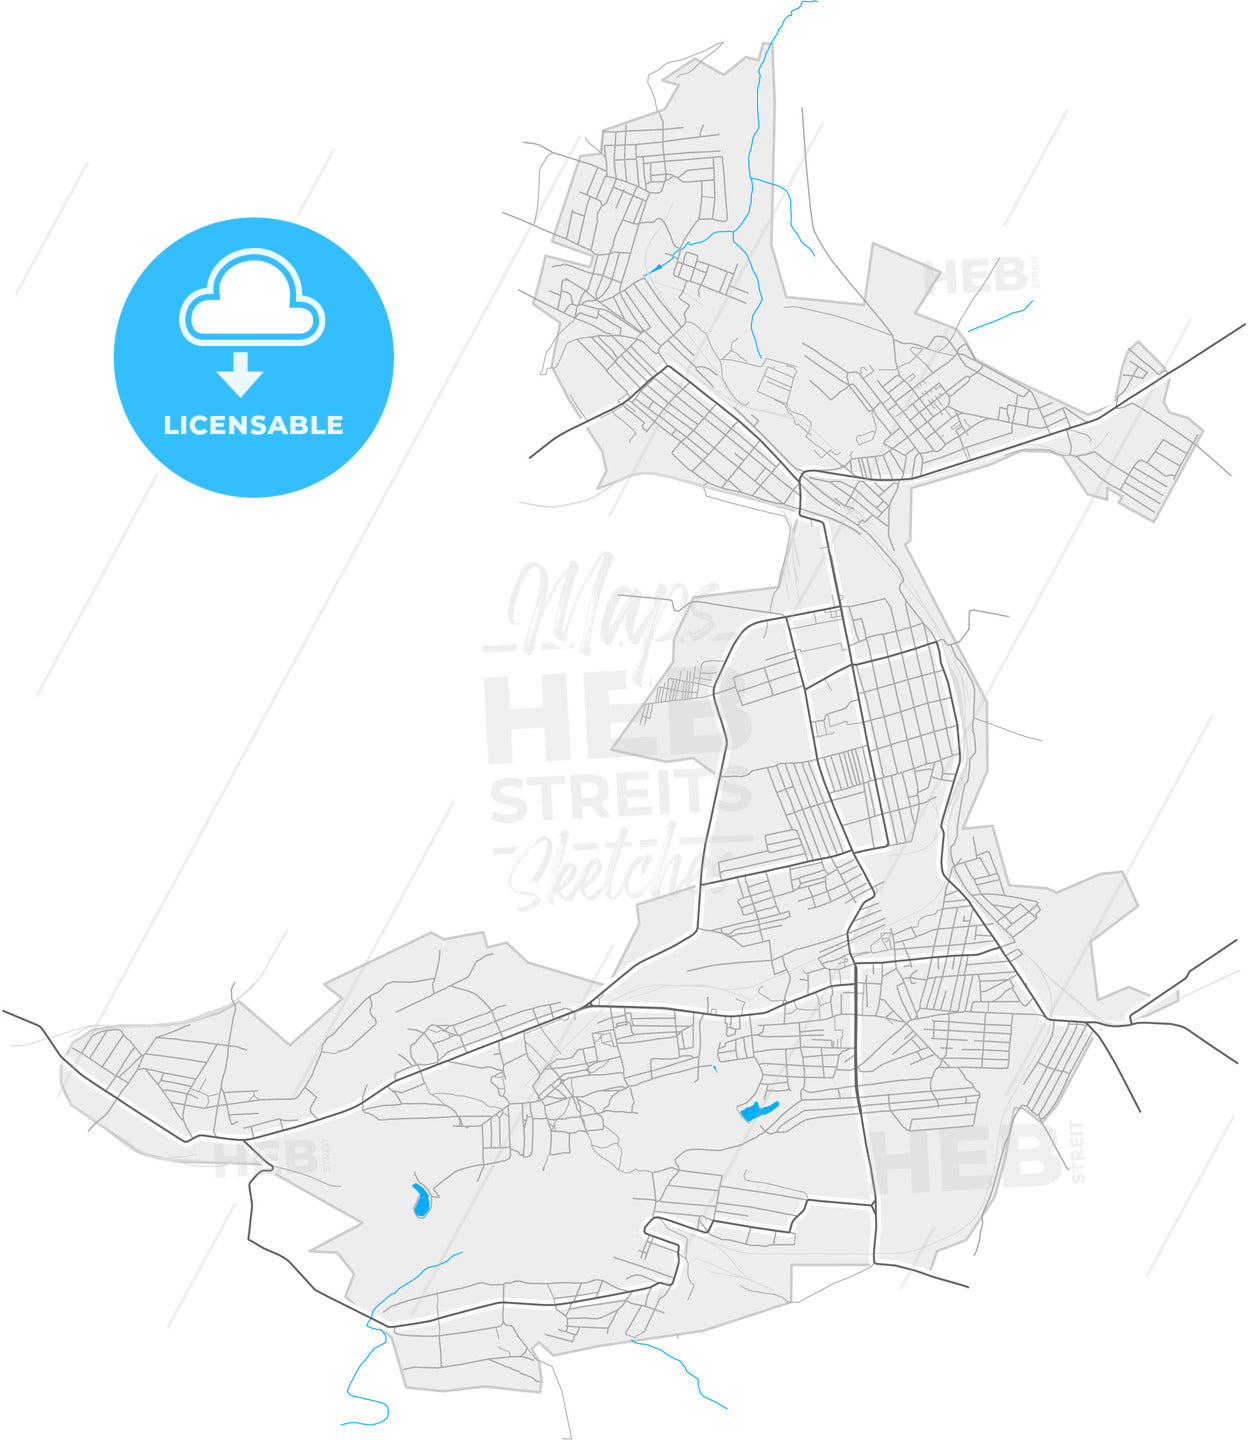 Snizhne, Donetsk Oblast, Ukraine, high quality vector map